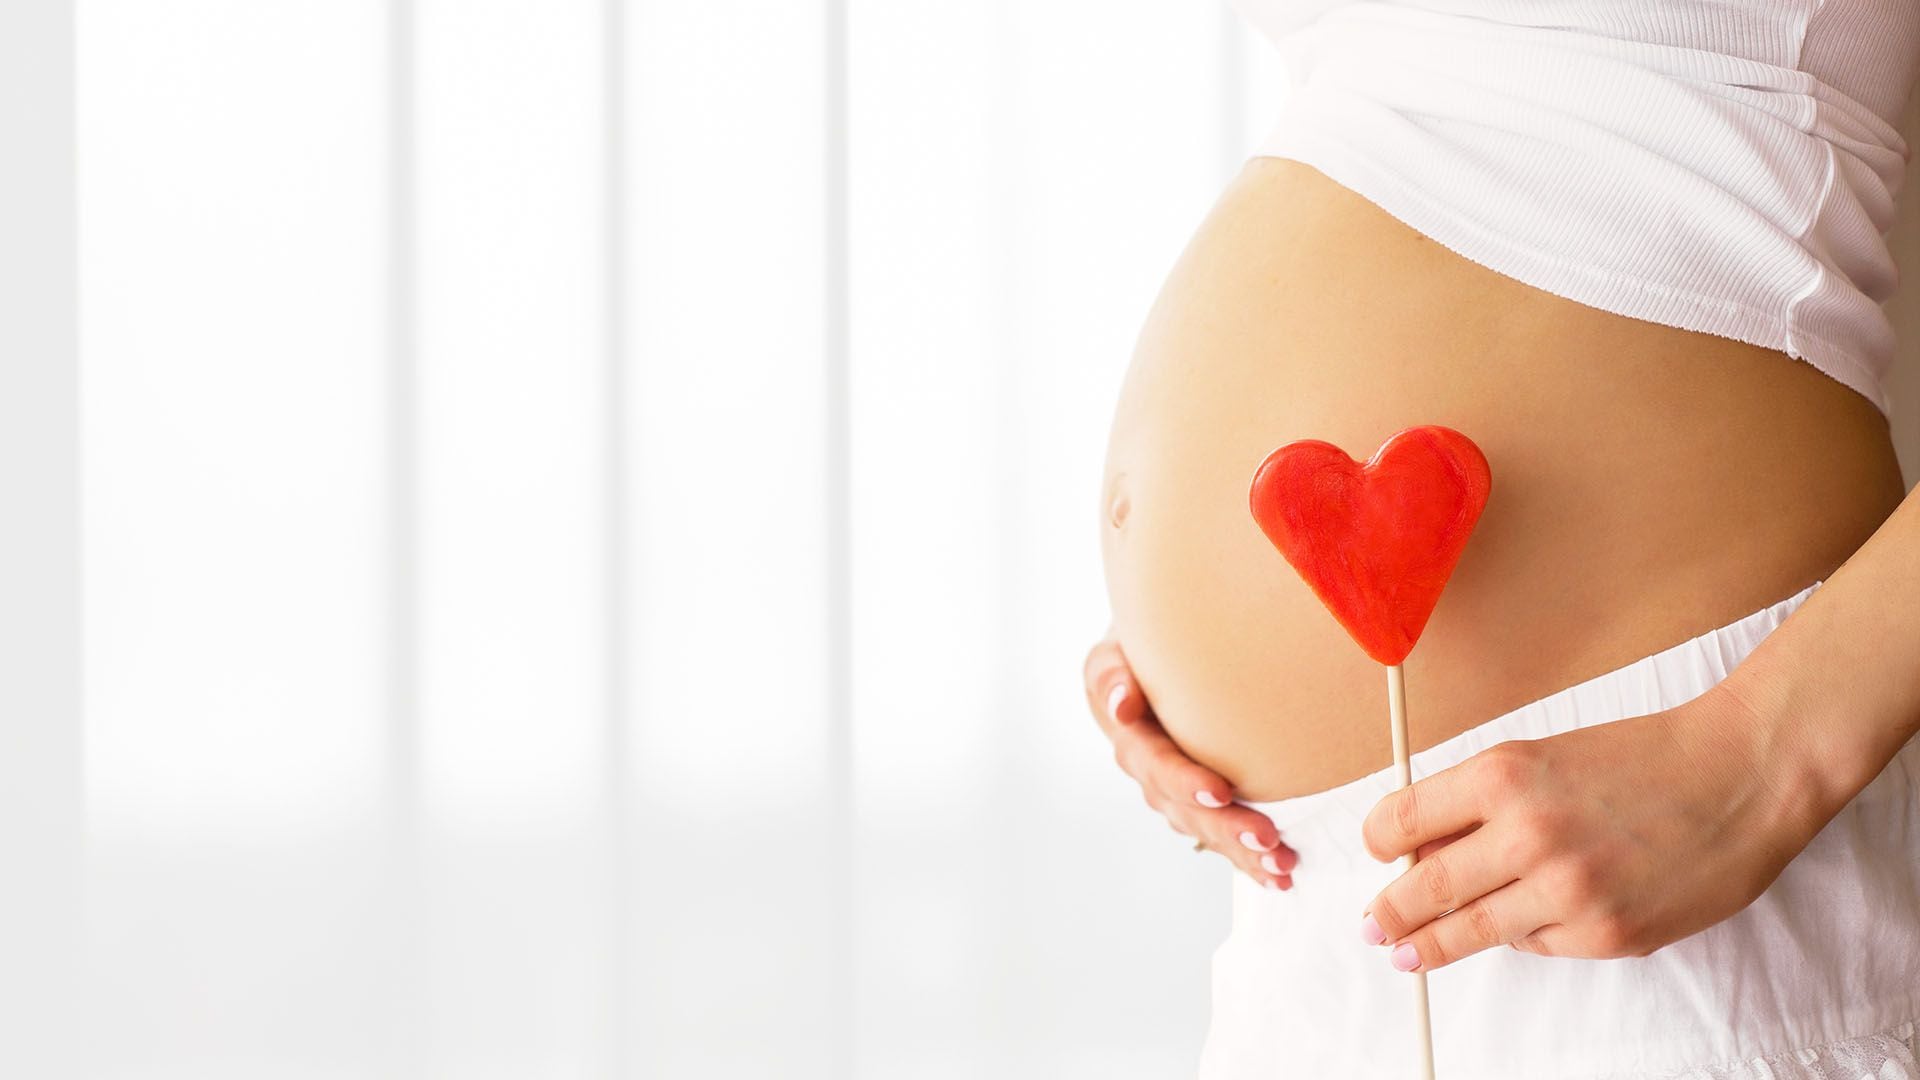 Embarazo, una etapa de cambios en la visión que son esenciales abordar en la consulta médica Getty